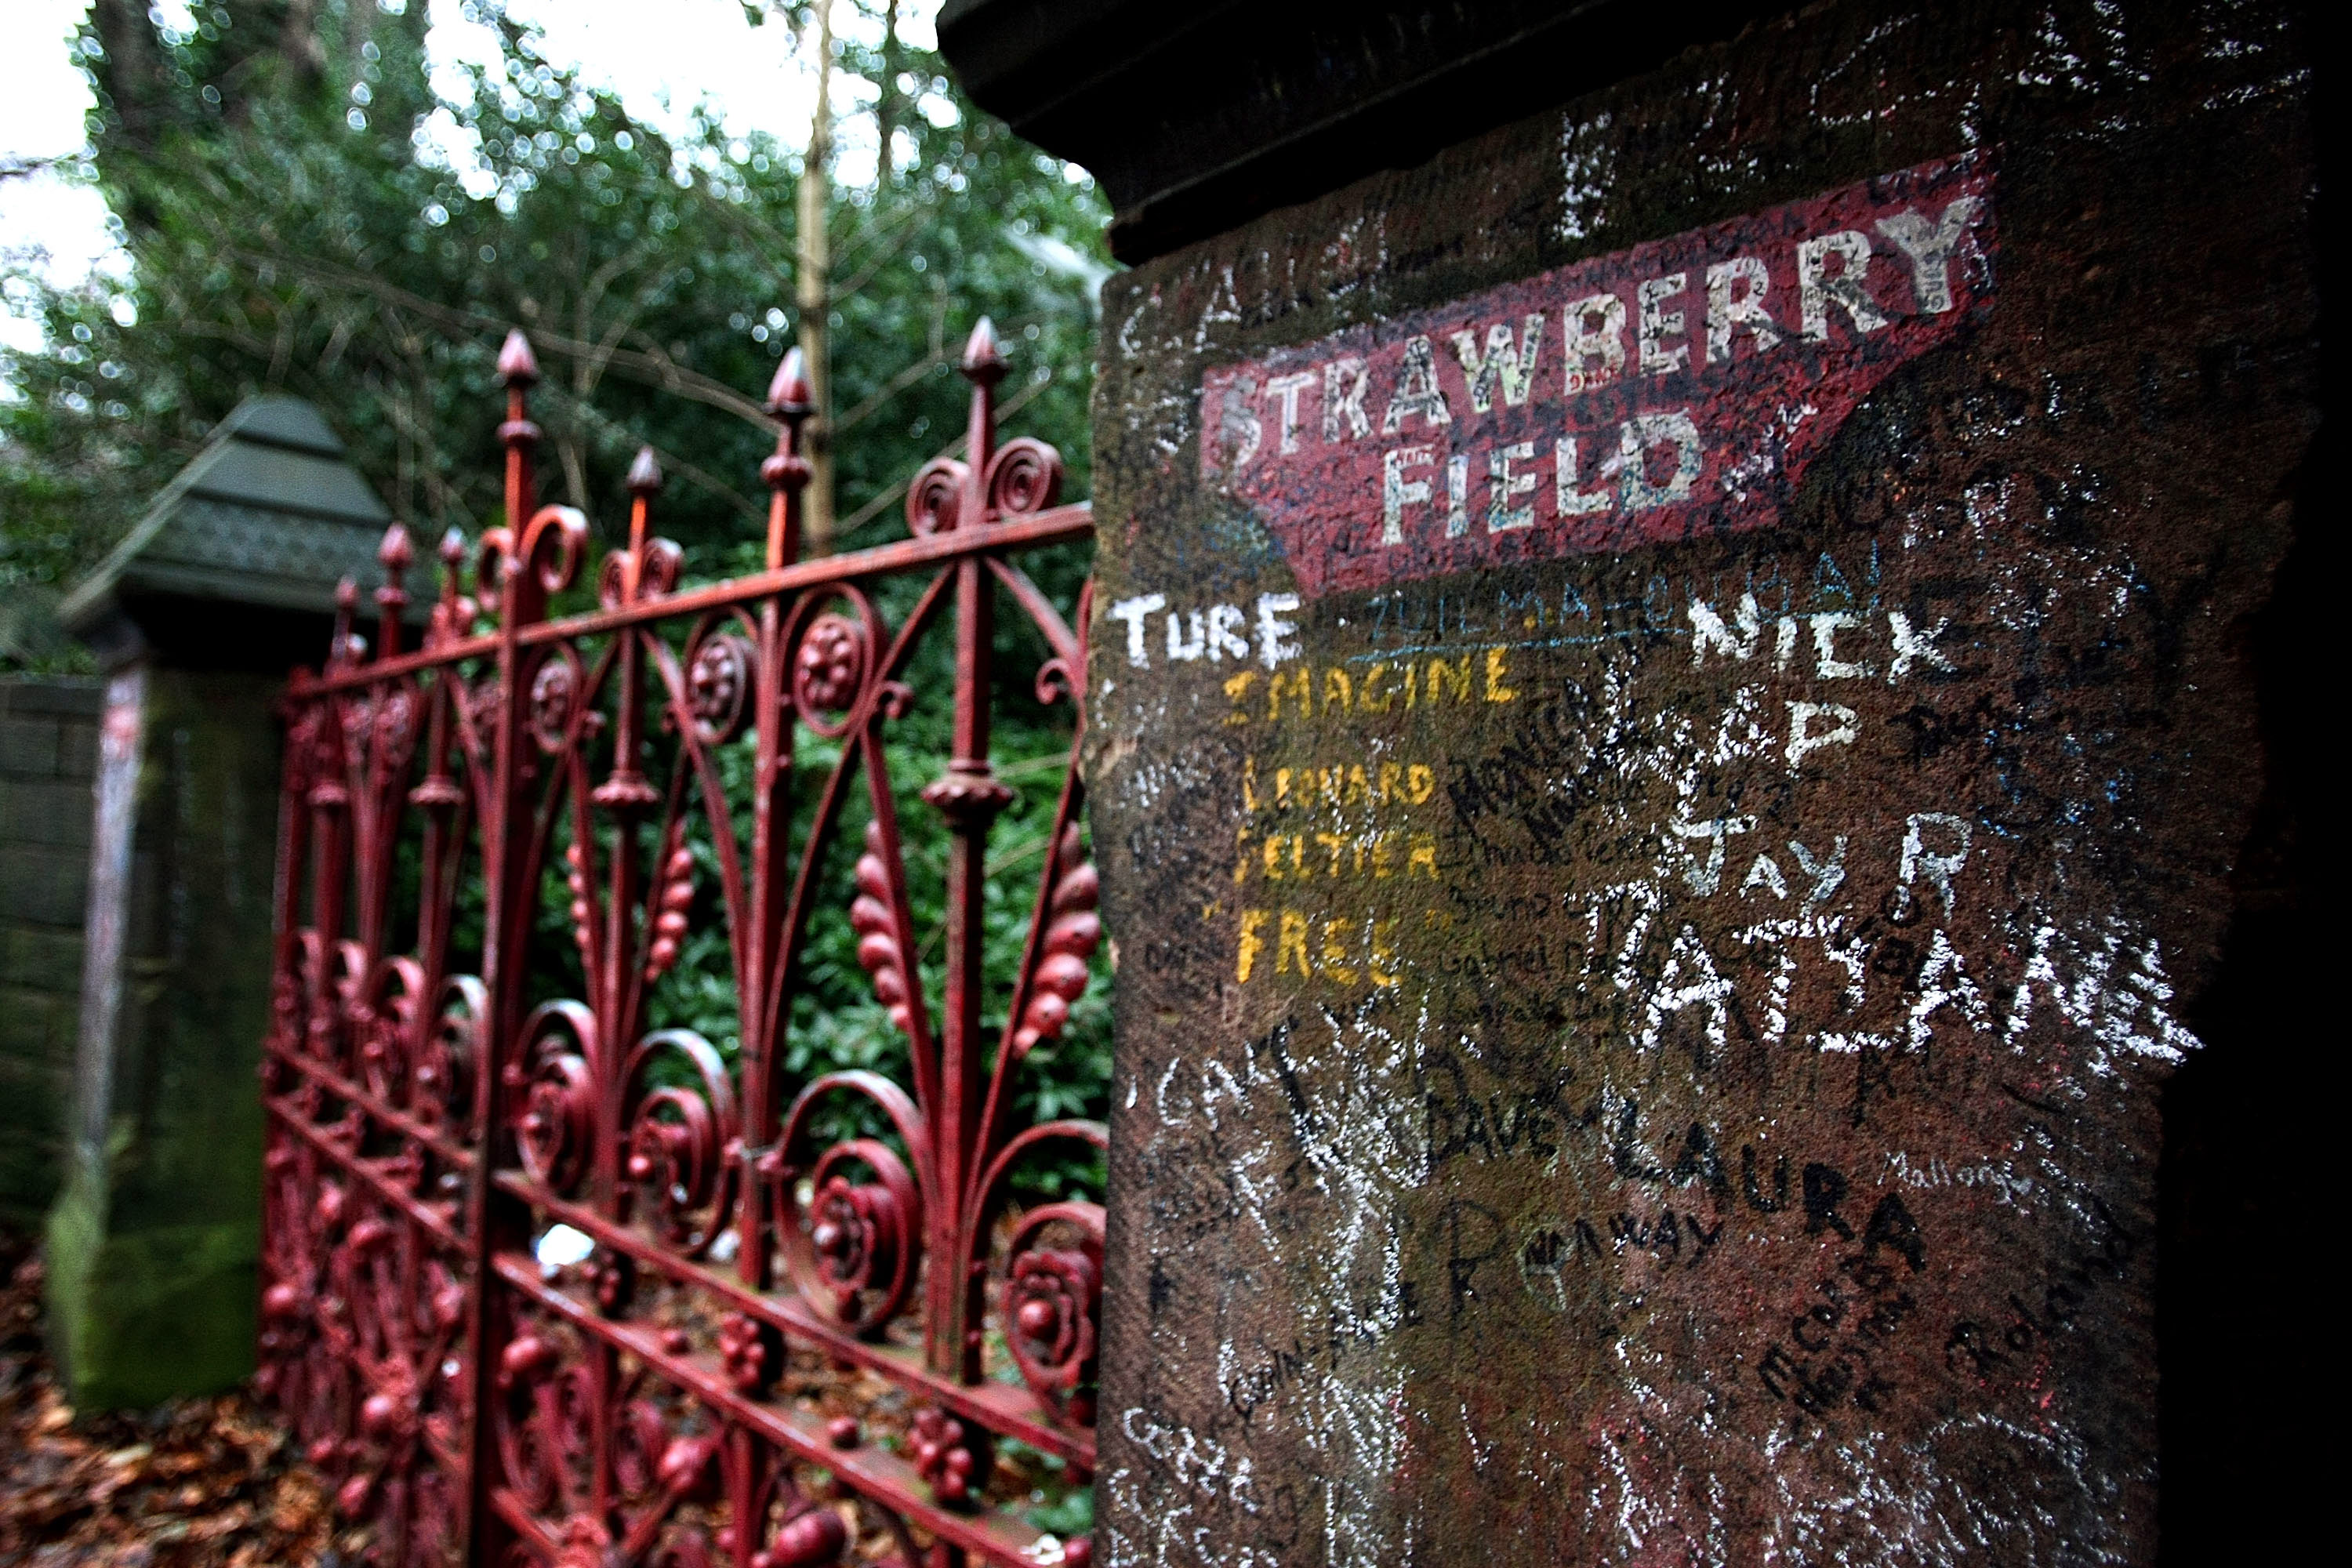 Das rote Tor der Strawberry Fields wurde 2011 durch eine Nachbildung ersetzt und ab dem 14. September 2019 steht es endlich offen für Beatles-Fans